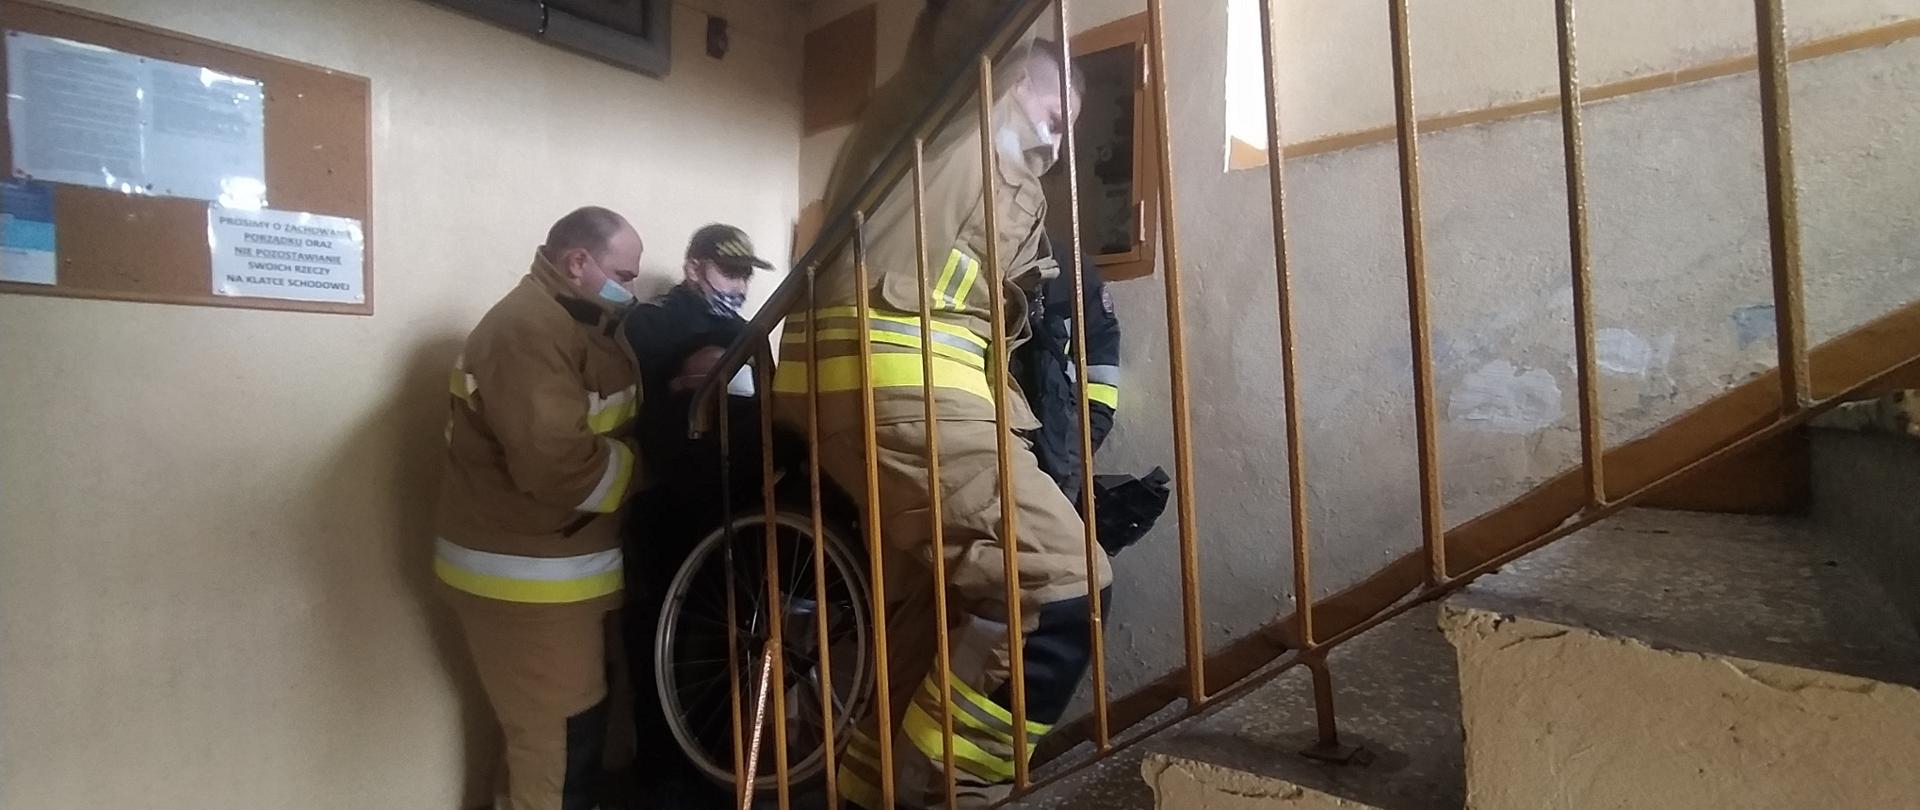 Strażacy pomagaja osobie niepełnosprawnej w transporcie po schodach